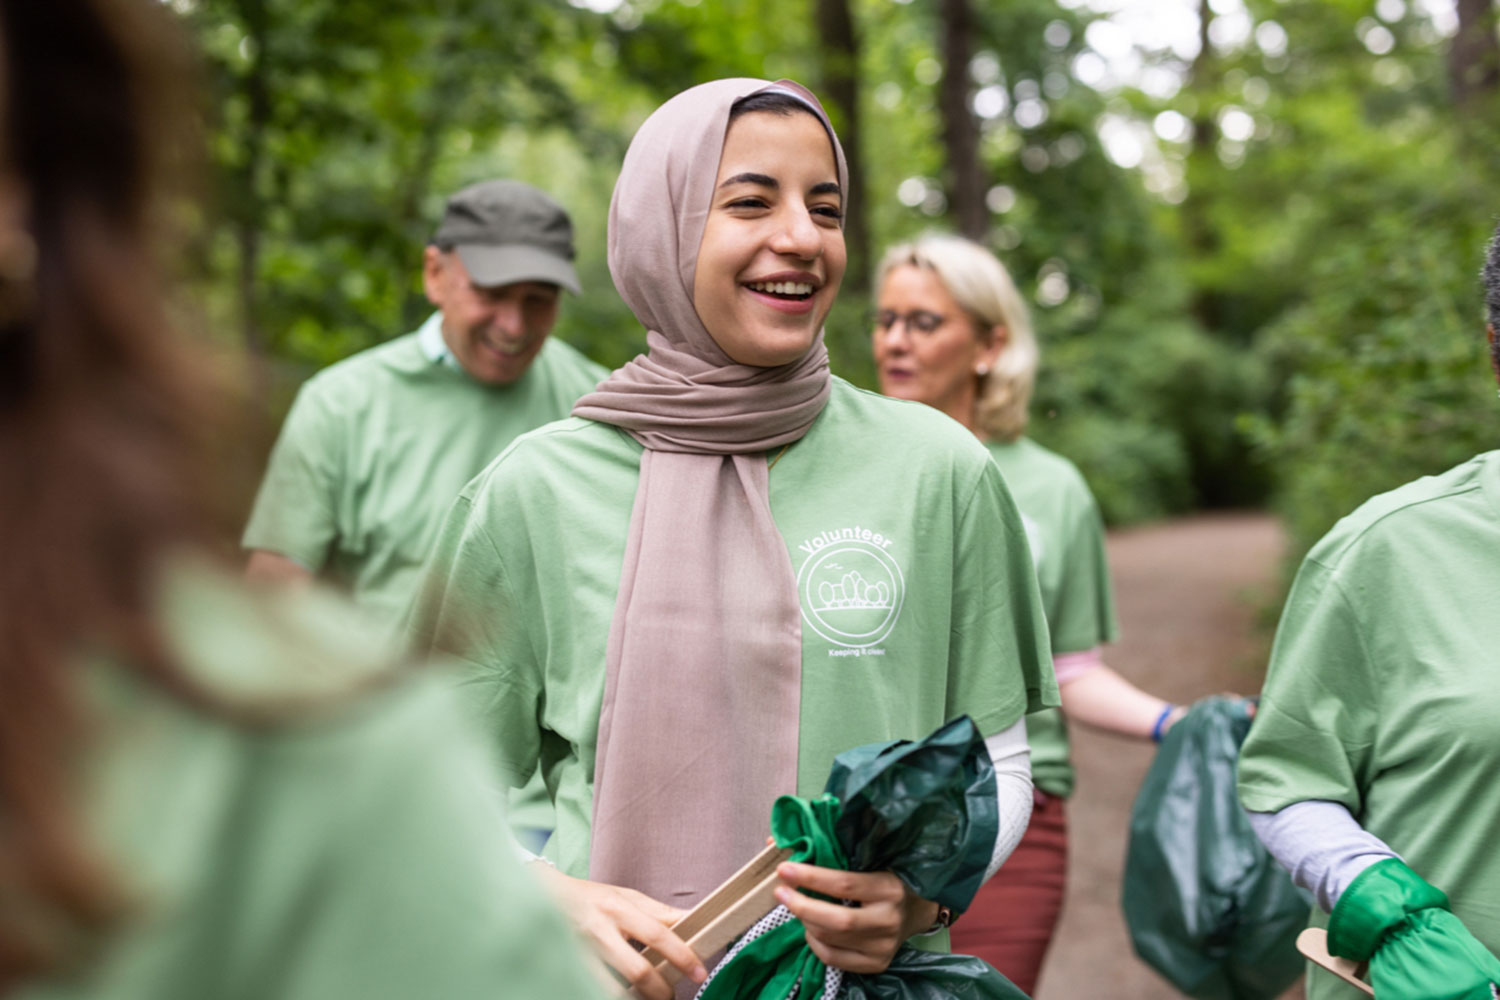 Mujer con pañuelo en la cabeza, camiseta verde y bolsa de basura.